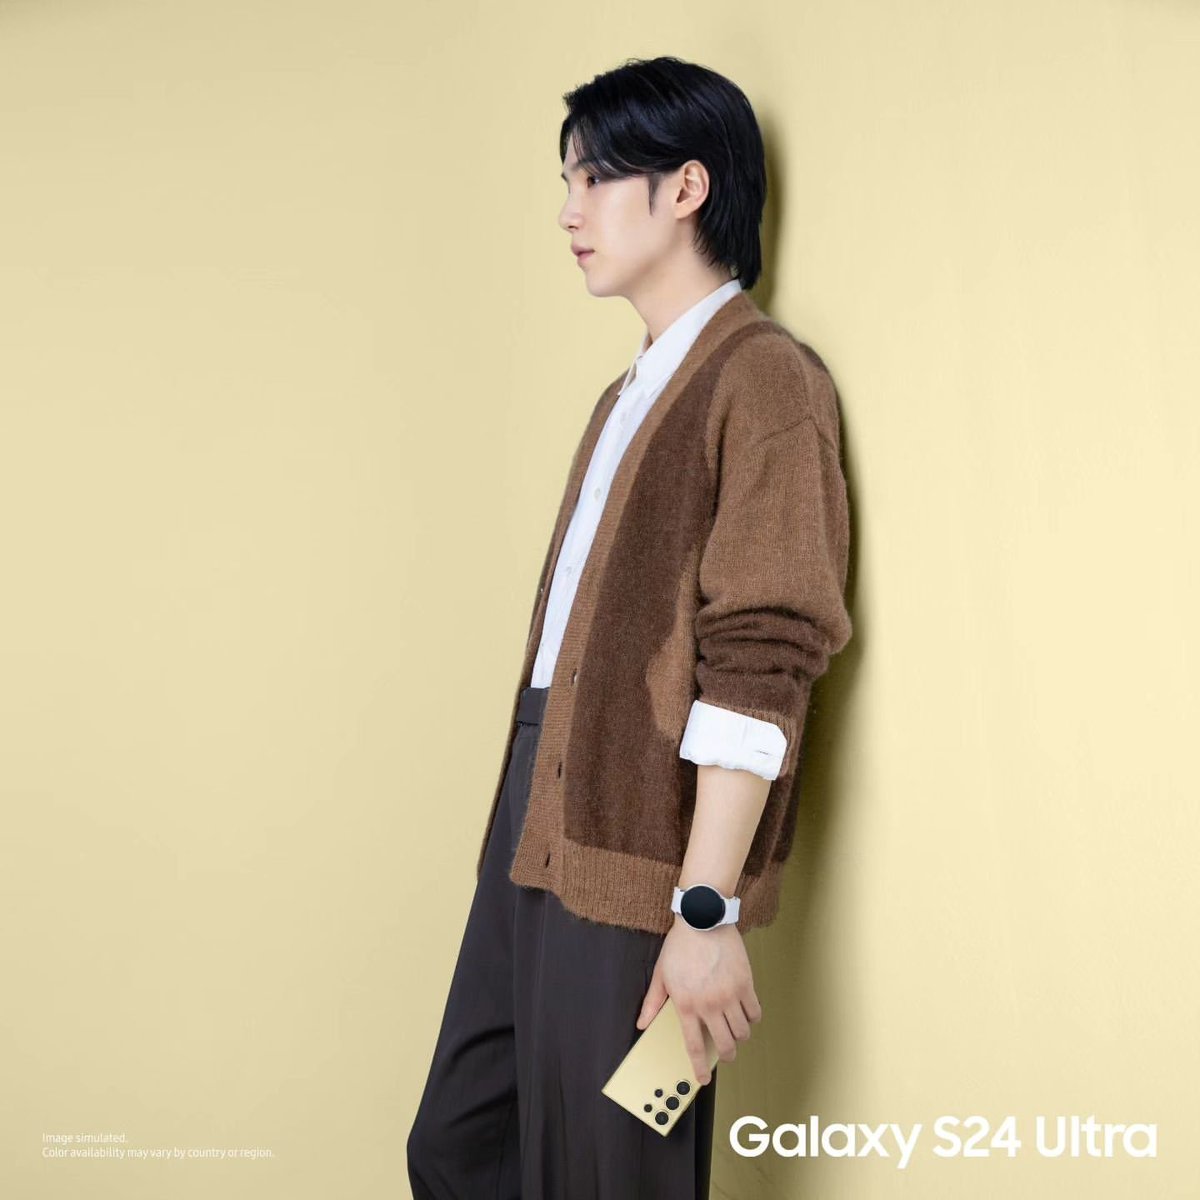 윤기 보고싶어 🐱

#SUGA #GalaxyS24 #GalaxyxSUGA #GalaxyAI #SamsungUnpacked